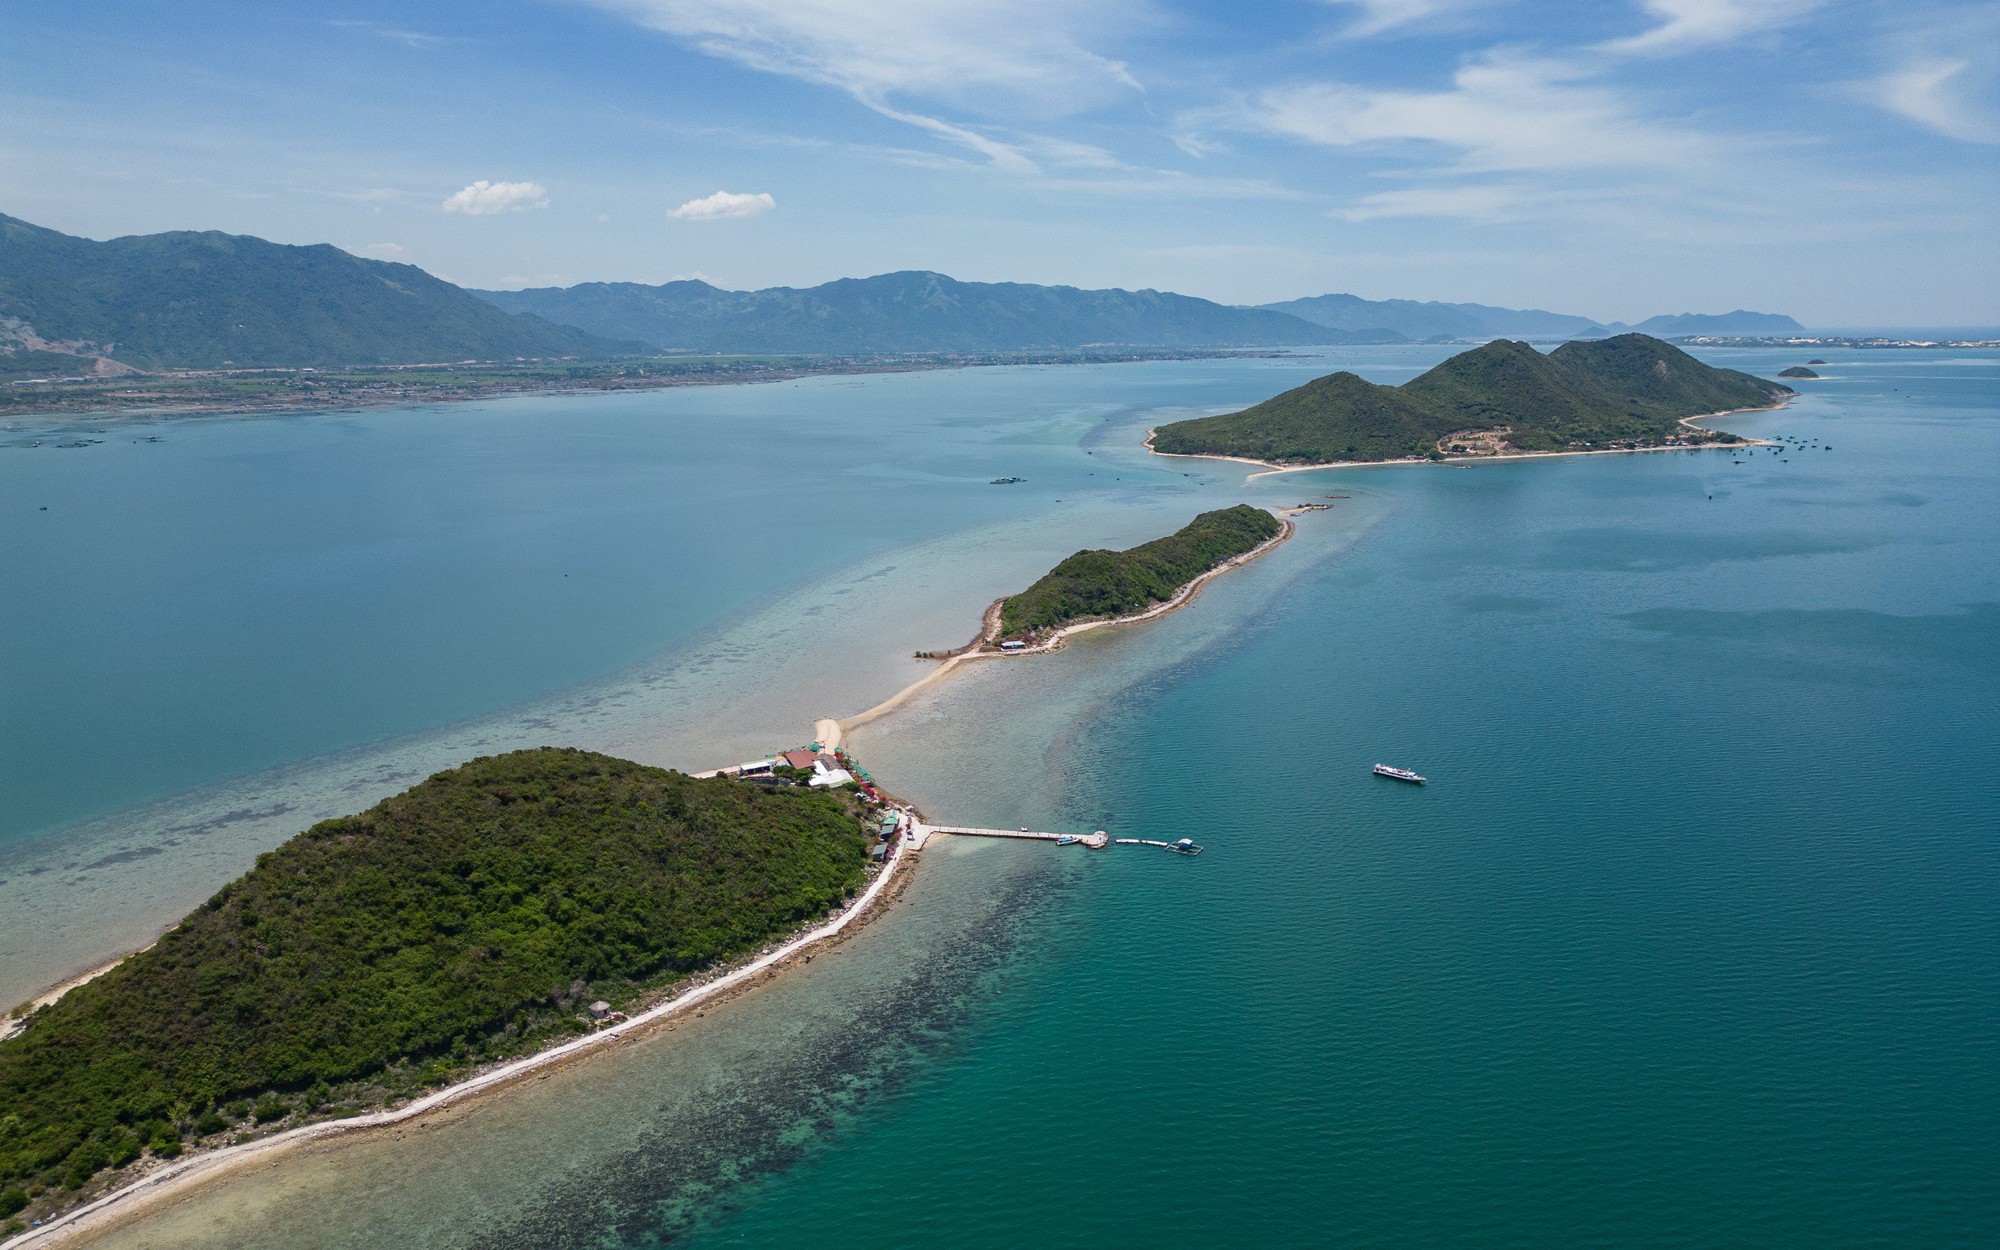 Có lẽ nào đây là làng sở hữu nhiều hòn đảo nhất ở Khánh Hòa, nằm trong vịnh biển đẹp như phim?- Ảnh 2.